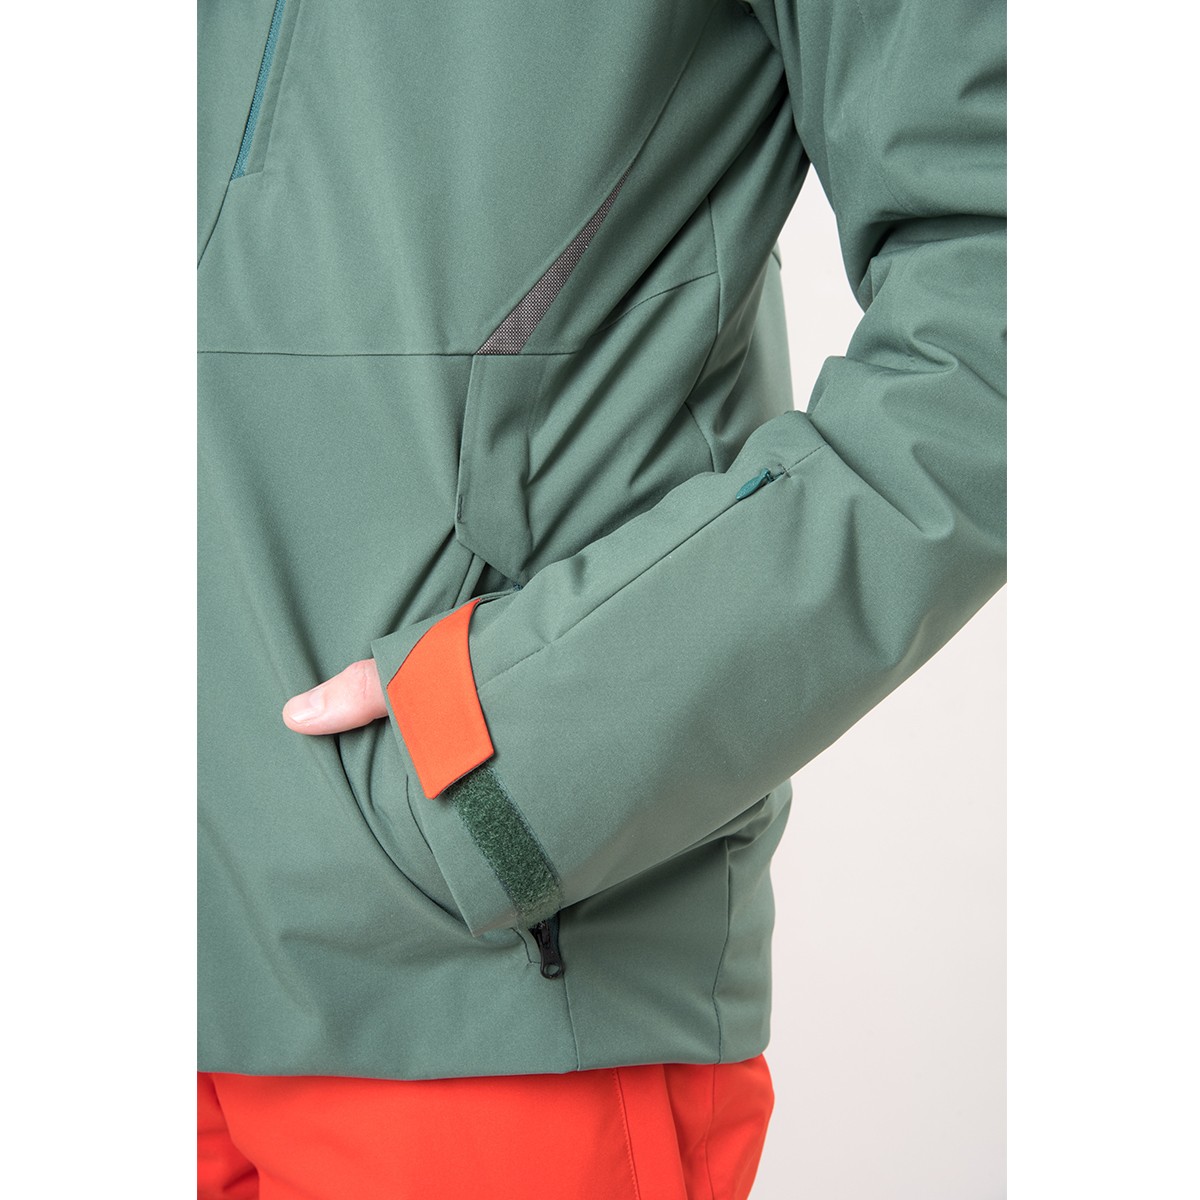 PHENIX ESB72OT46 Cutlass Jacket Jacket - 2022 - Ski Shop 